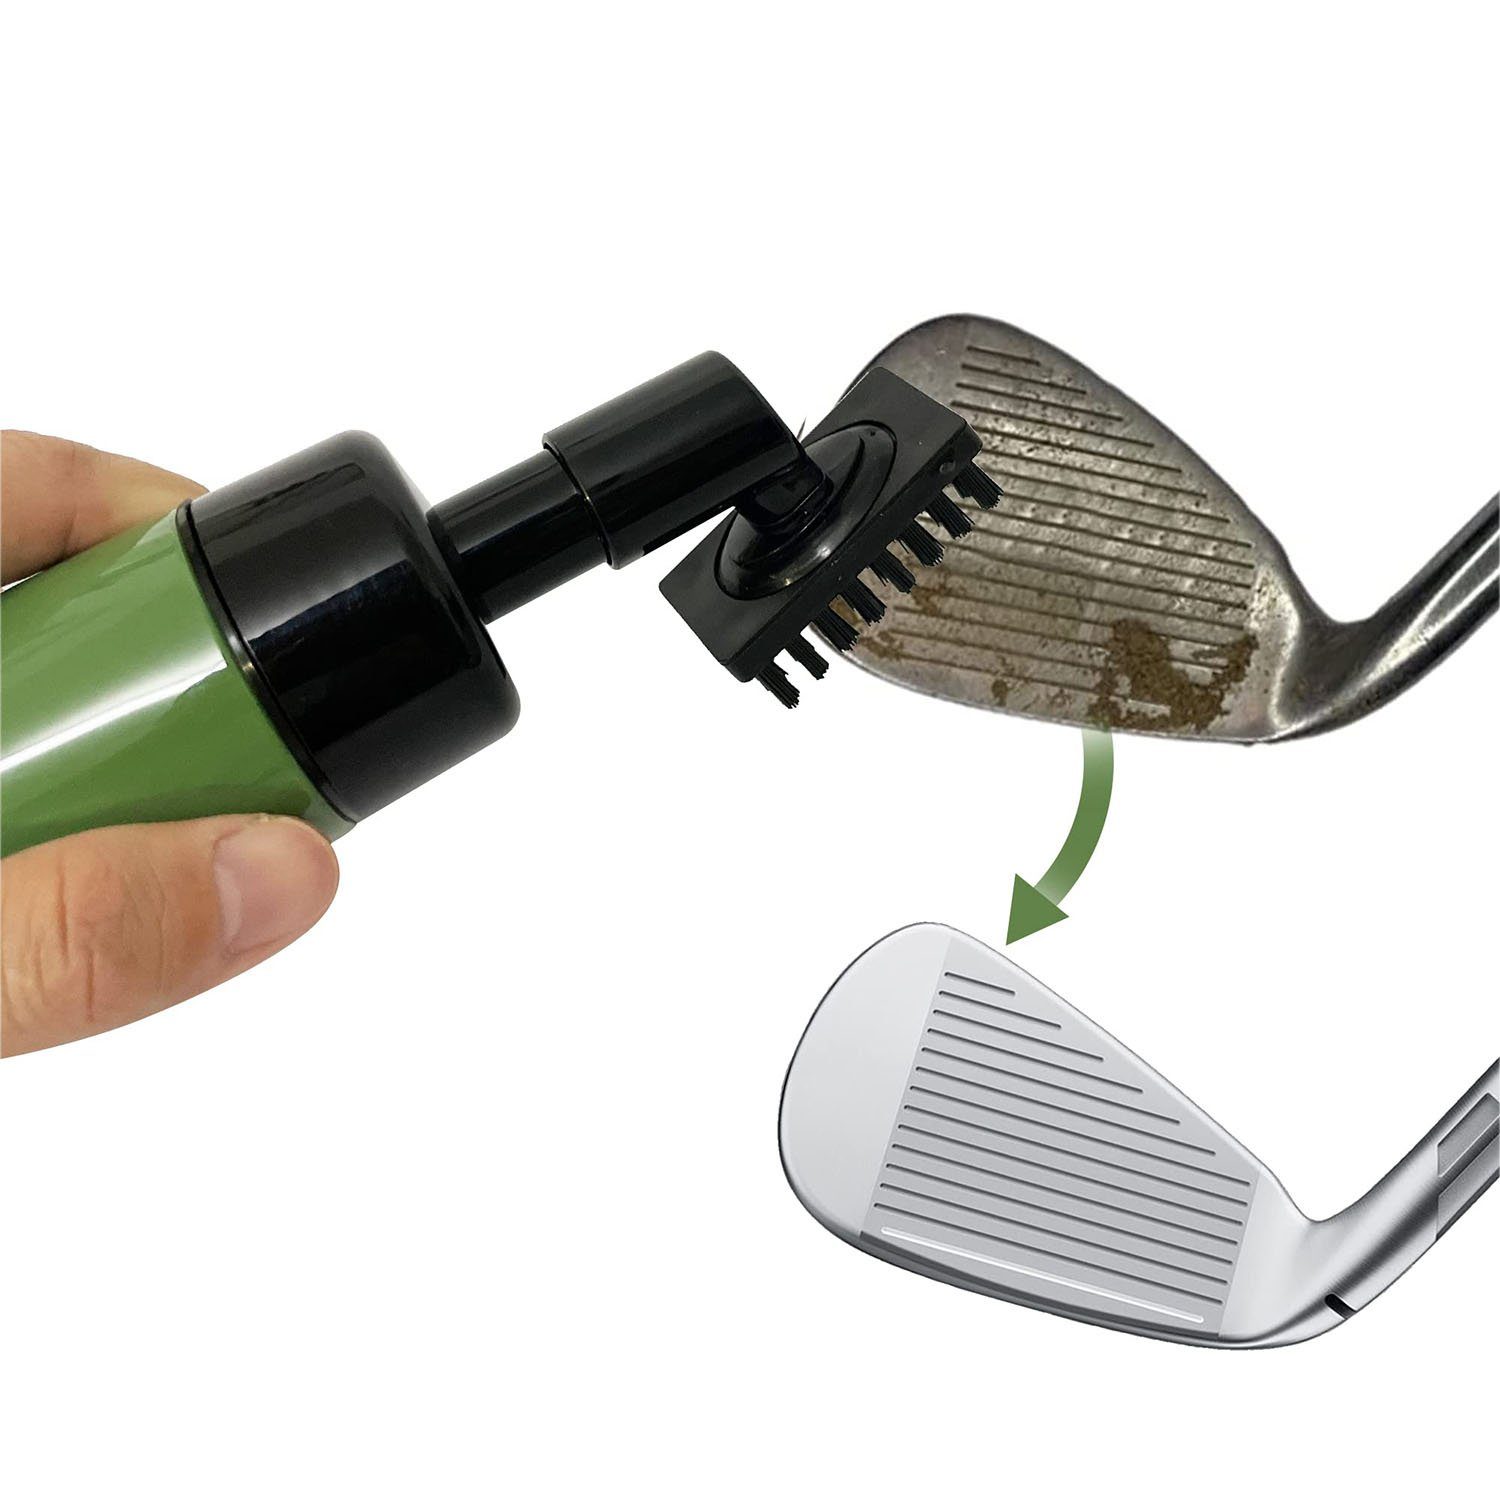 MAGICSHE Bürste Club Club Reiniger, das Geschenk Golf Reinigungsbürste, Golf schwarz beste Essential Pinsel Golf Accessoires, für Golf Männer